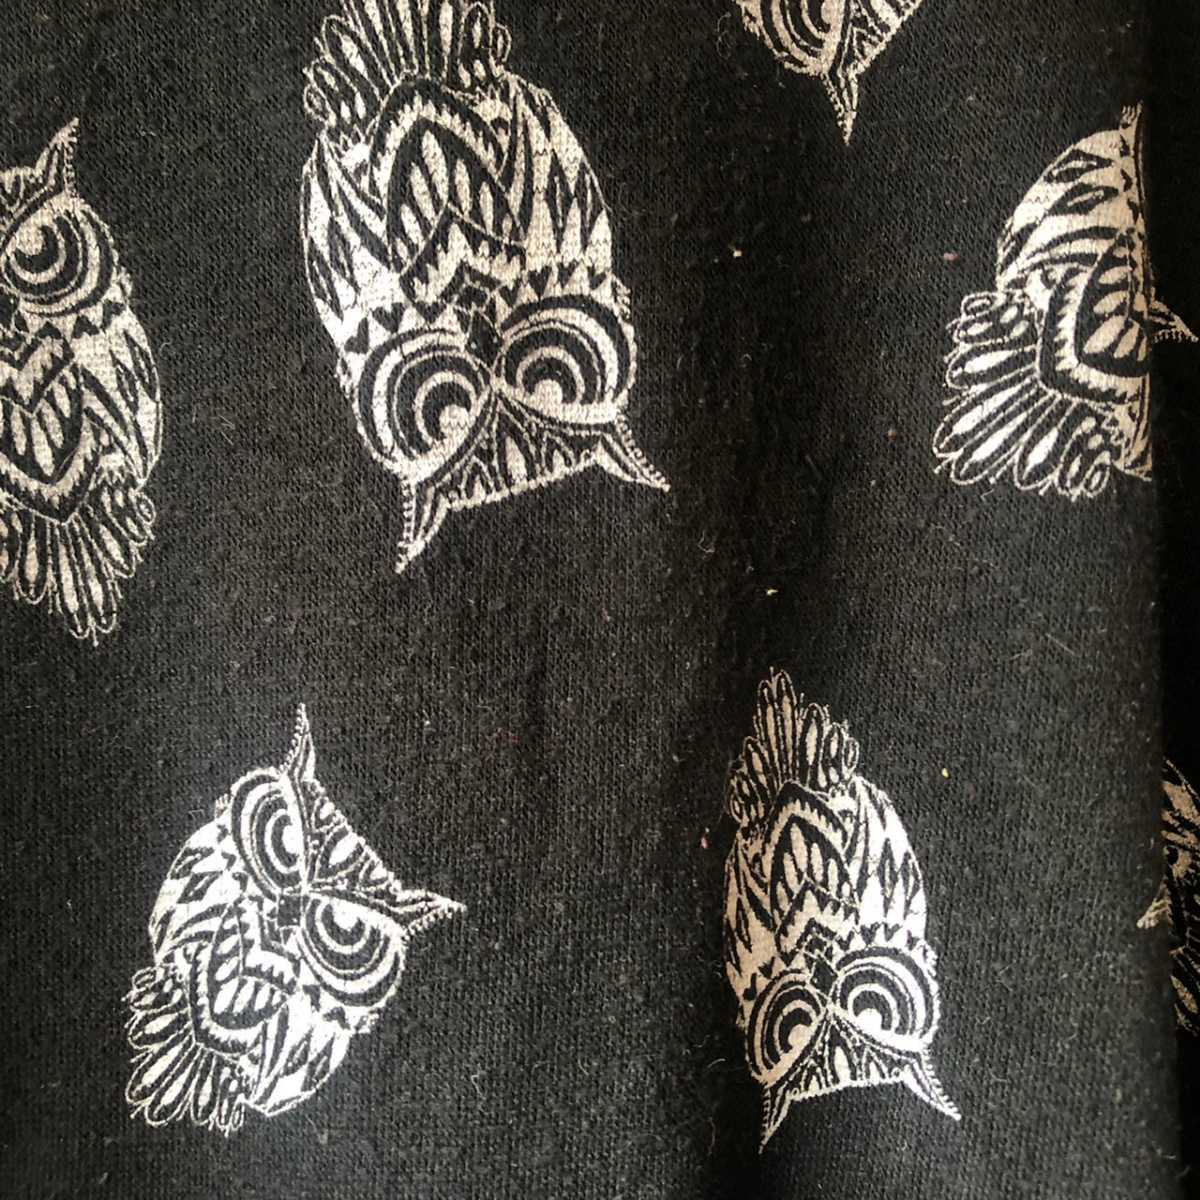  owl NO BOUNDARIES total pattern sweat black black /Y272